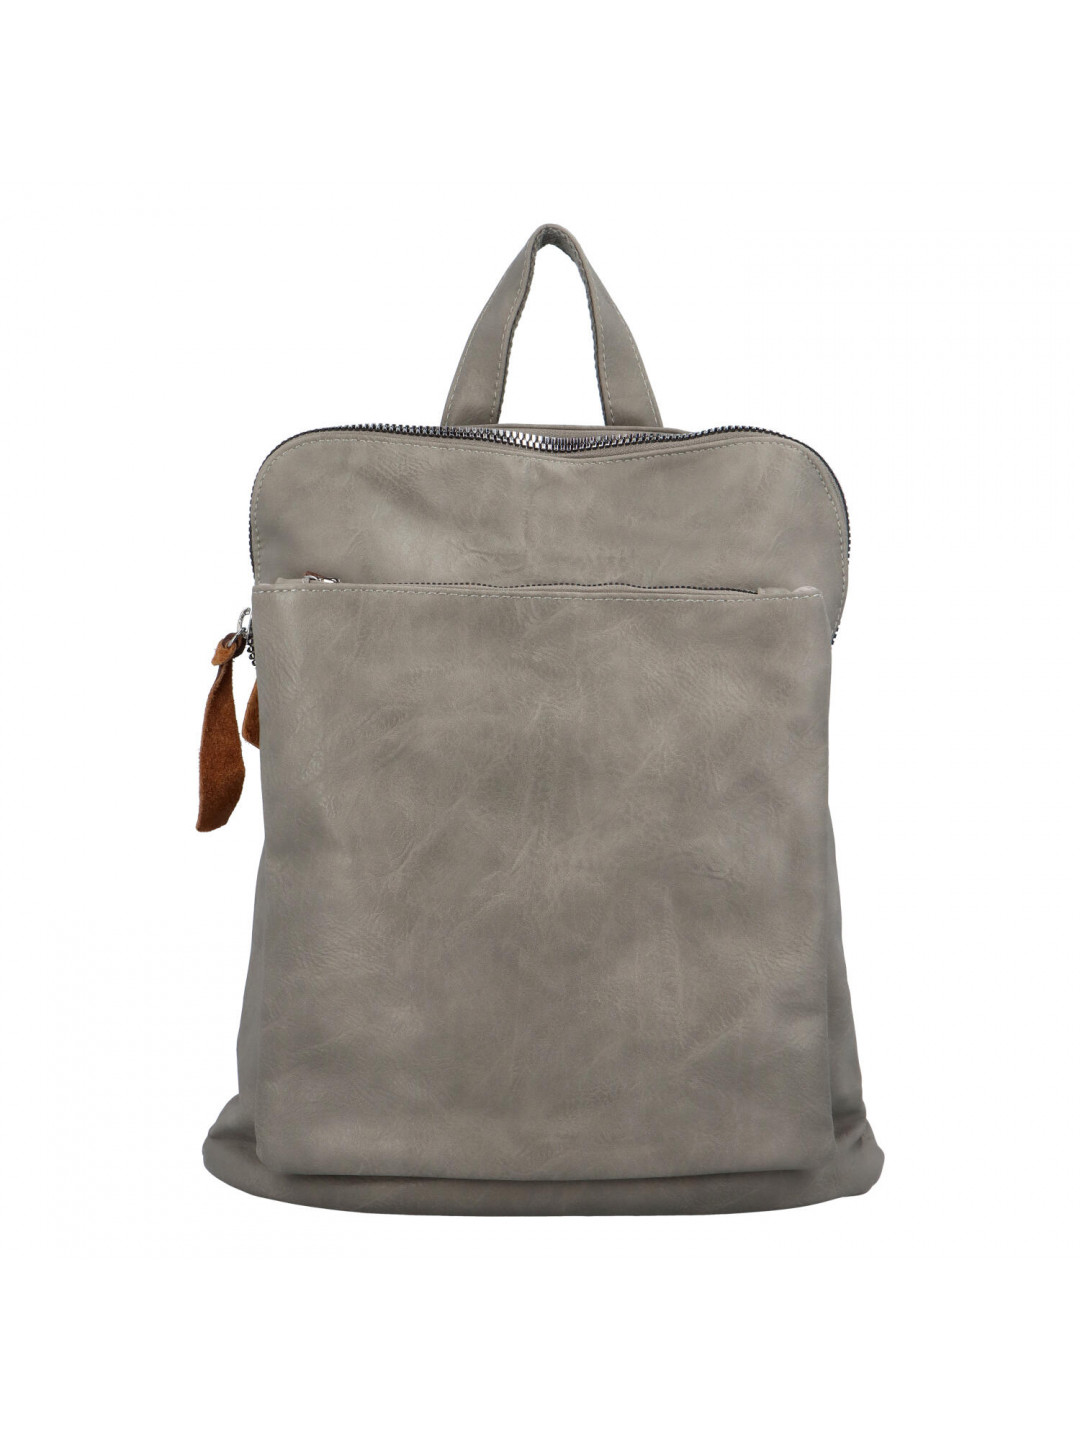 Dámský městský batoh kabelka šedý – Paolo Bags Buginni